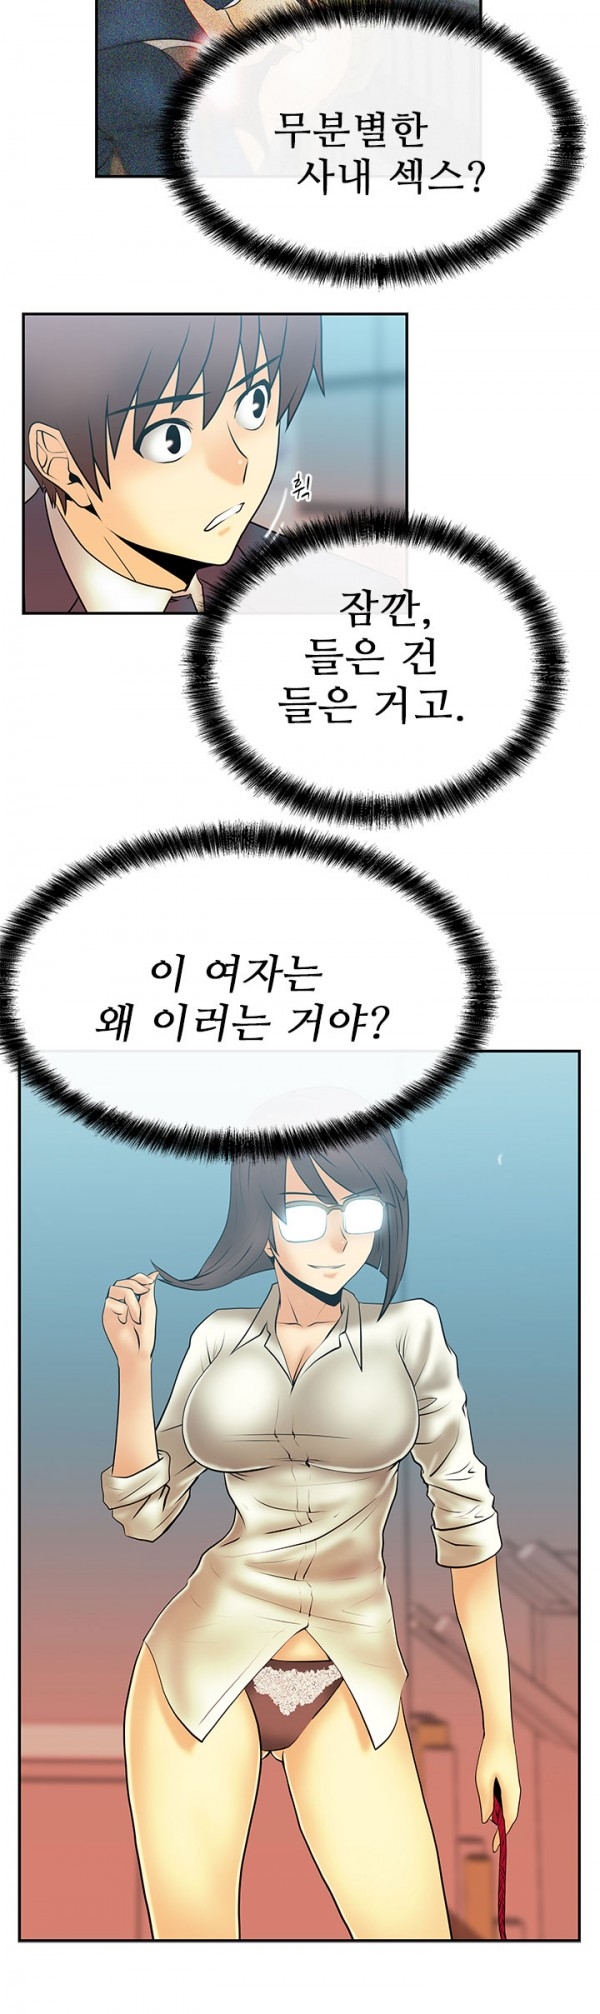 [Minu Mindu] Office Lady Vol. 1 [Korean] 141